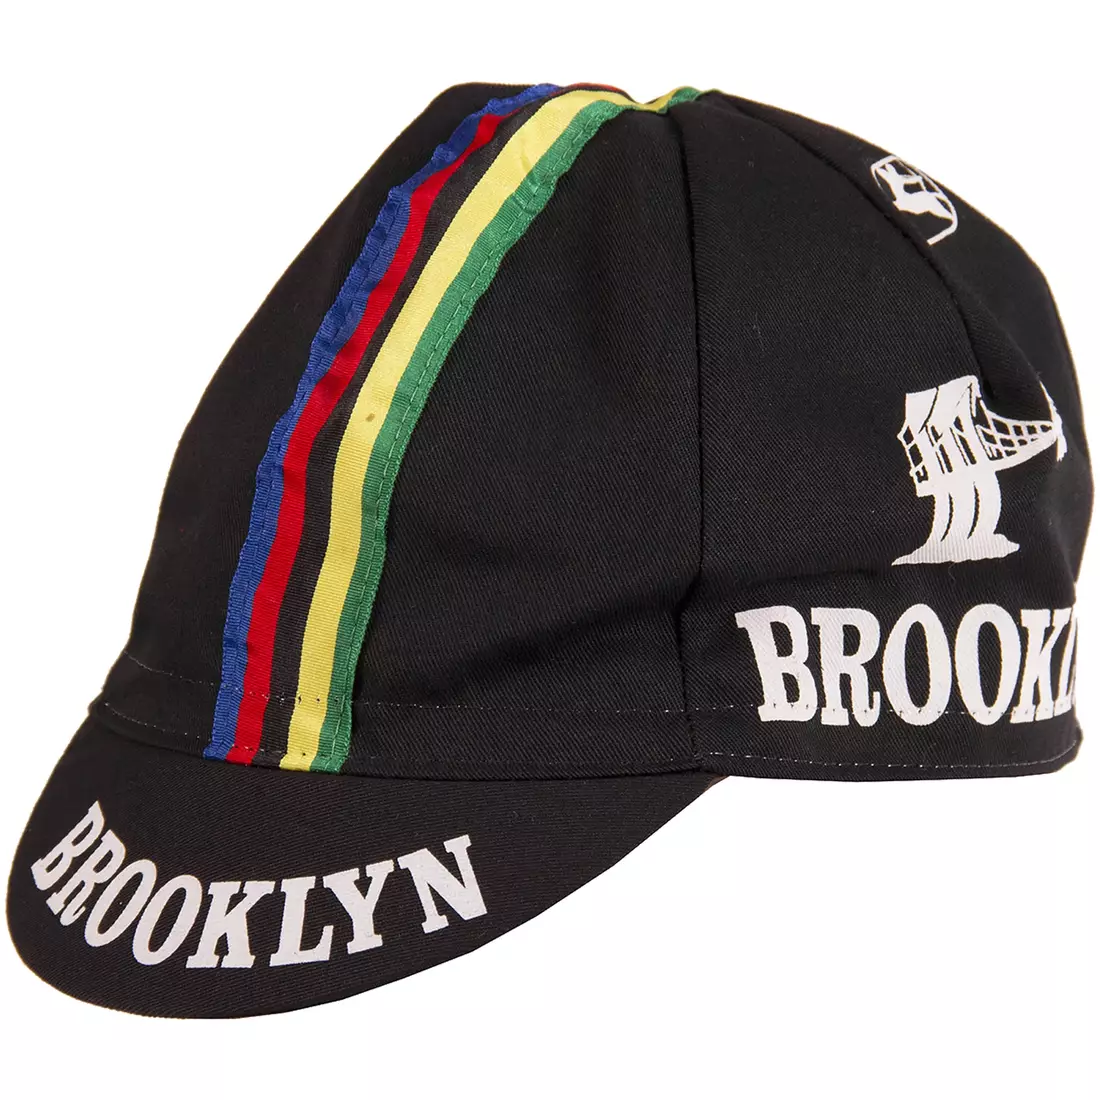 GIORDANA SS18 kerékpáros sapka - Brooklyn - Fekete, csíkos szalaggal GI-S6-COCA-BROK-BLCK egy méret